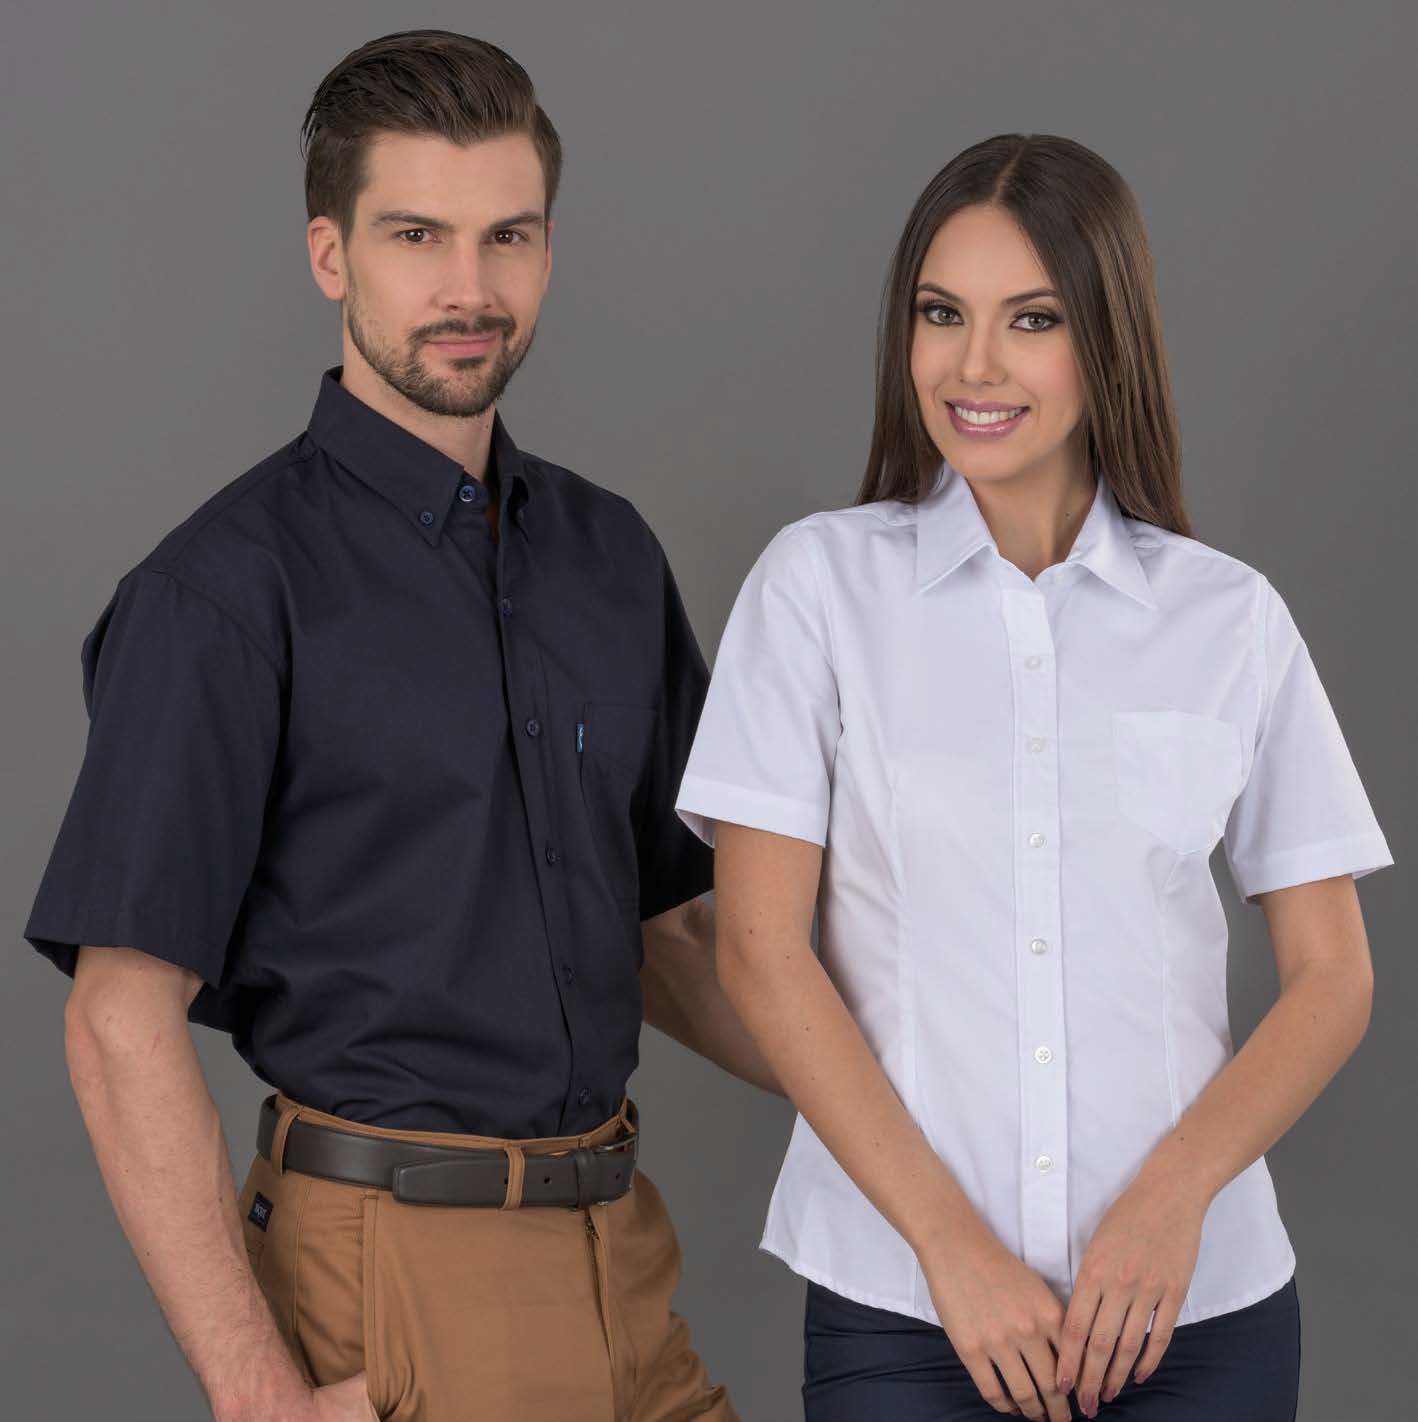 Uniformes Dacache: Camisas, Blusas y Pantalones que brindan la mejor imagen empresarial.